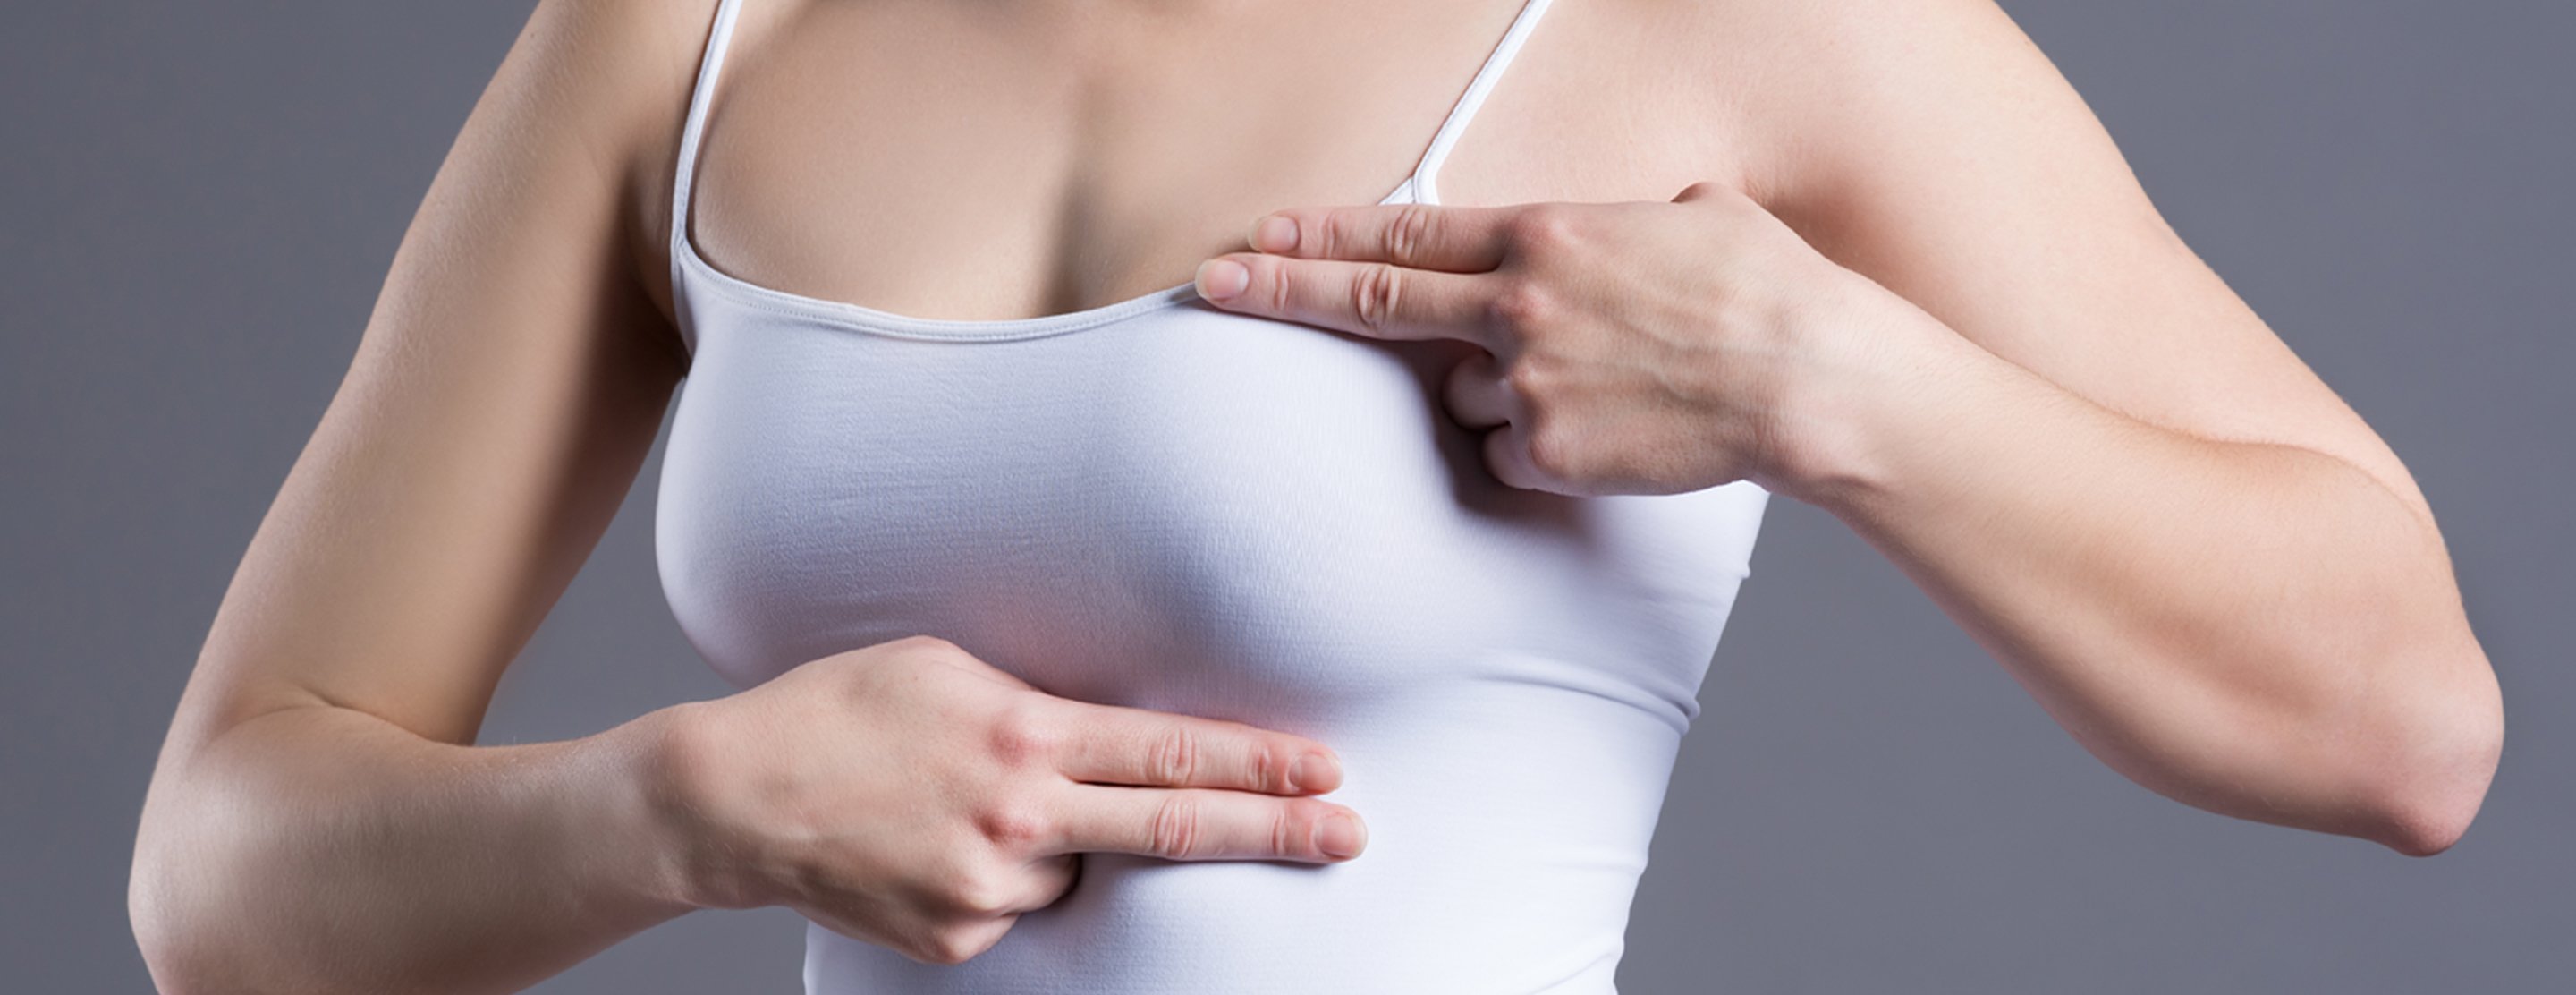 Фото молочной железы у женщин